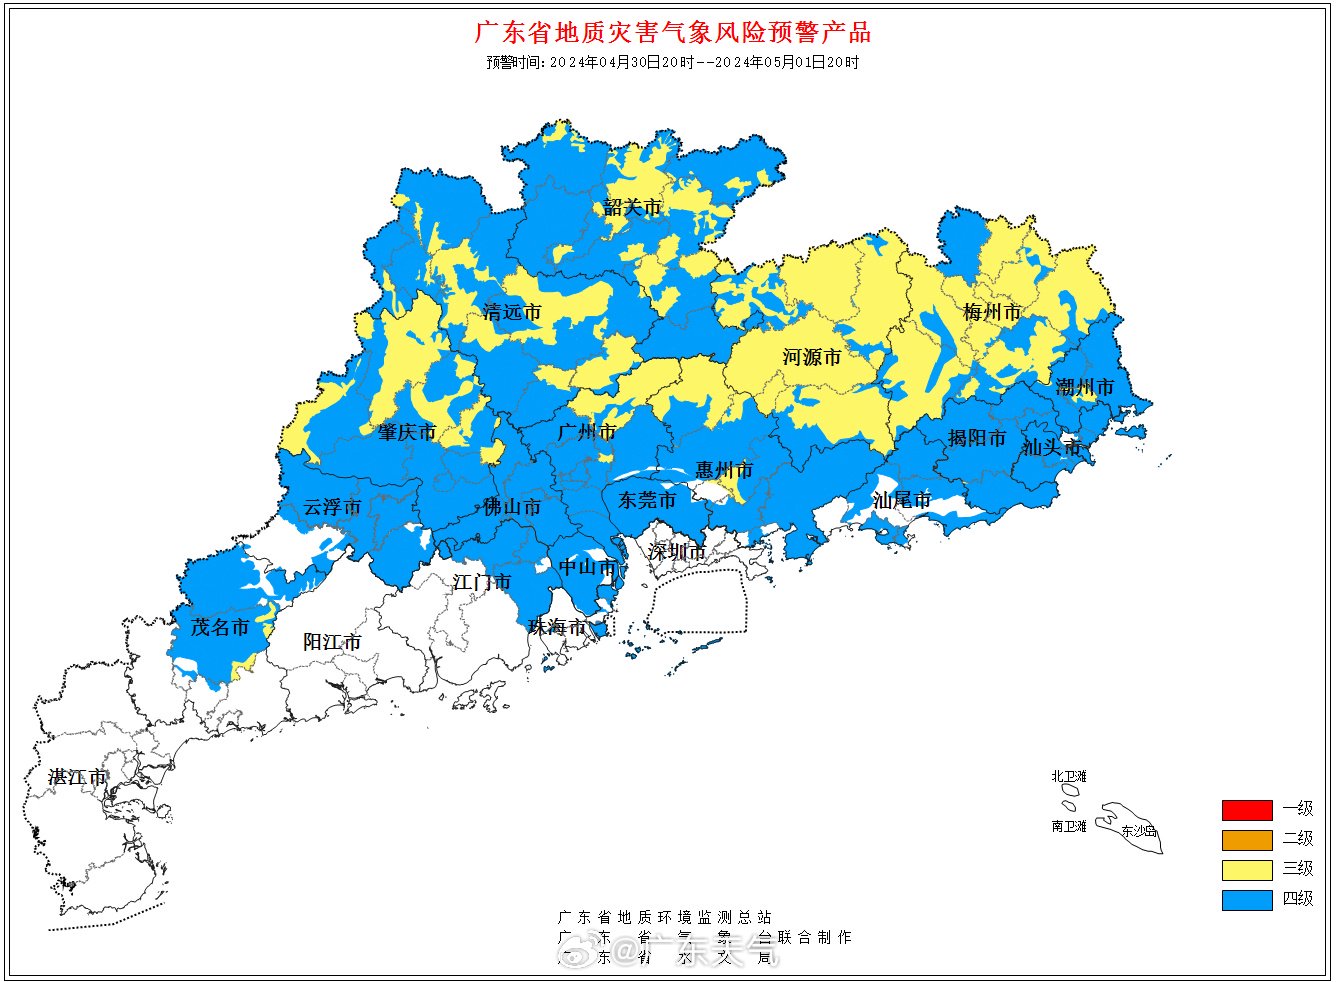 微博@廣東天氣 此前發佈的地質災害氣像風險預警產品，梅州大部分區域被標黃色（三級）；